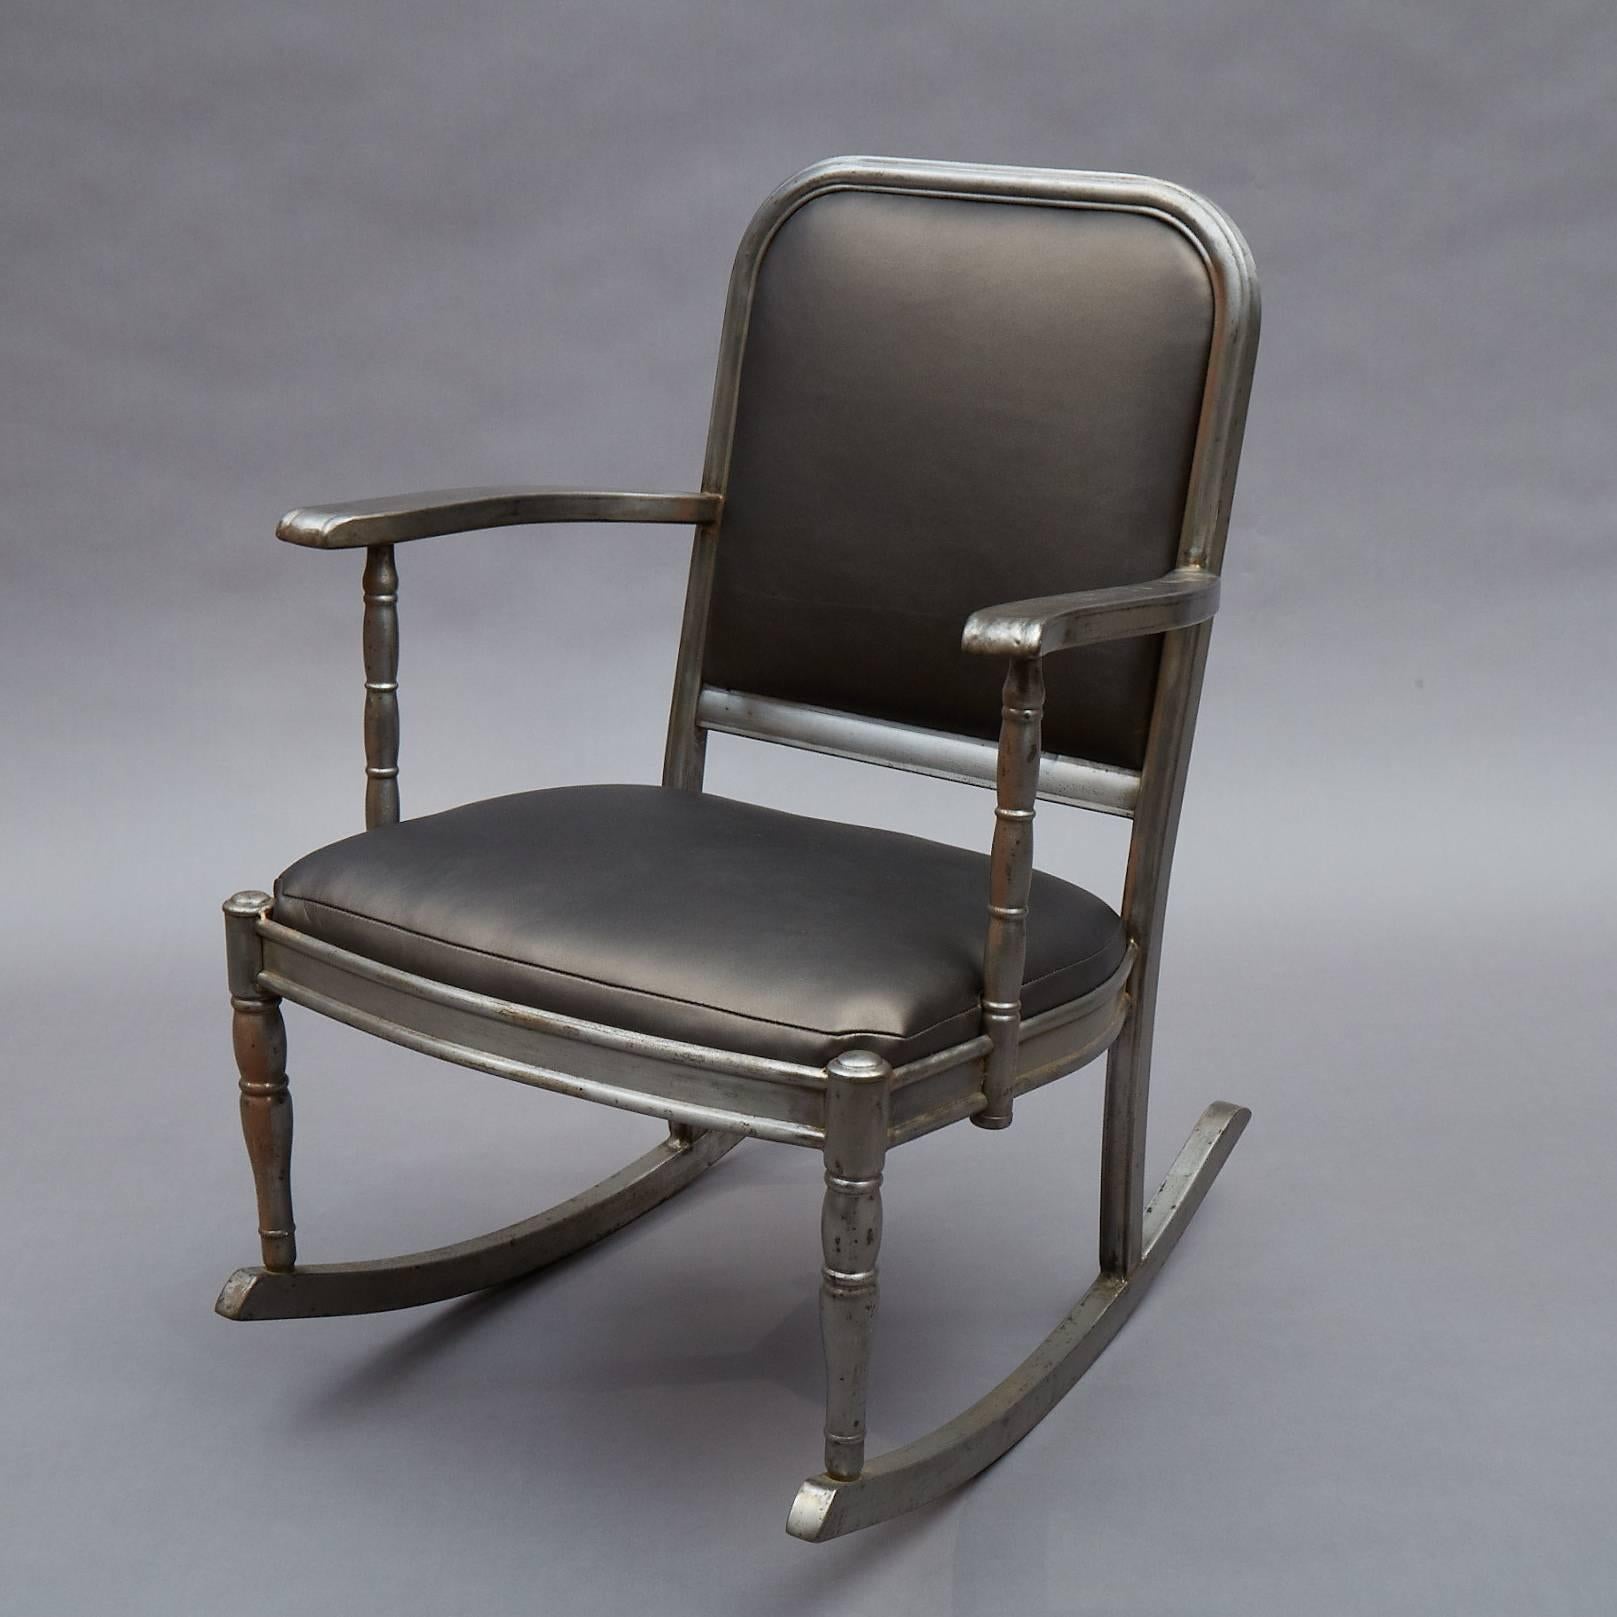 Chaise à bascule industrielle, institutionnelle, en acier brossé, recouverte d'un vinyle de couleur bronze, de la série Sheraton de Simmons Company Furniture.